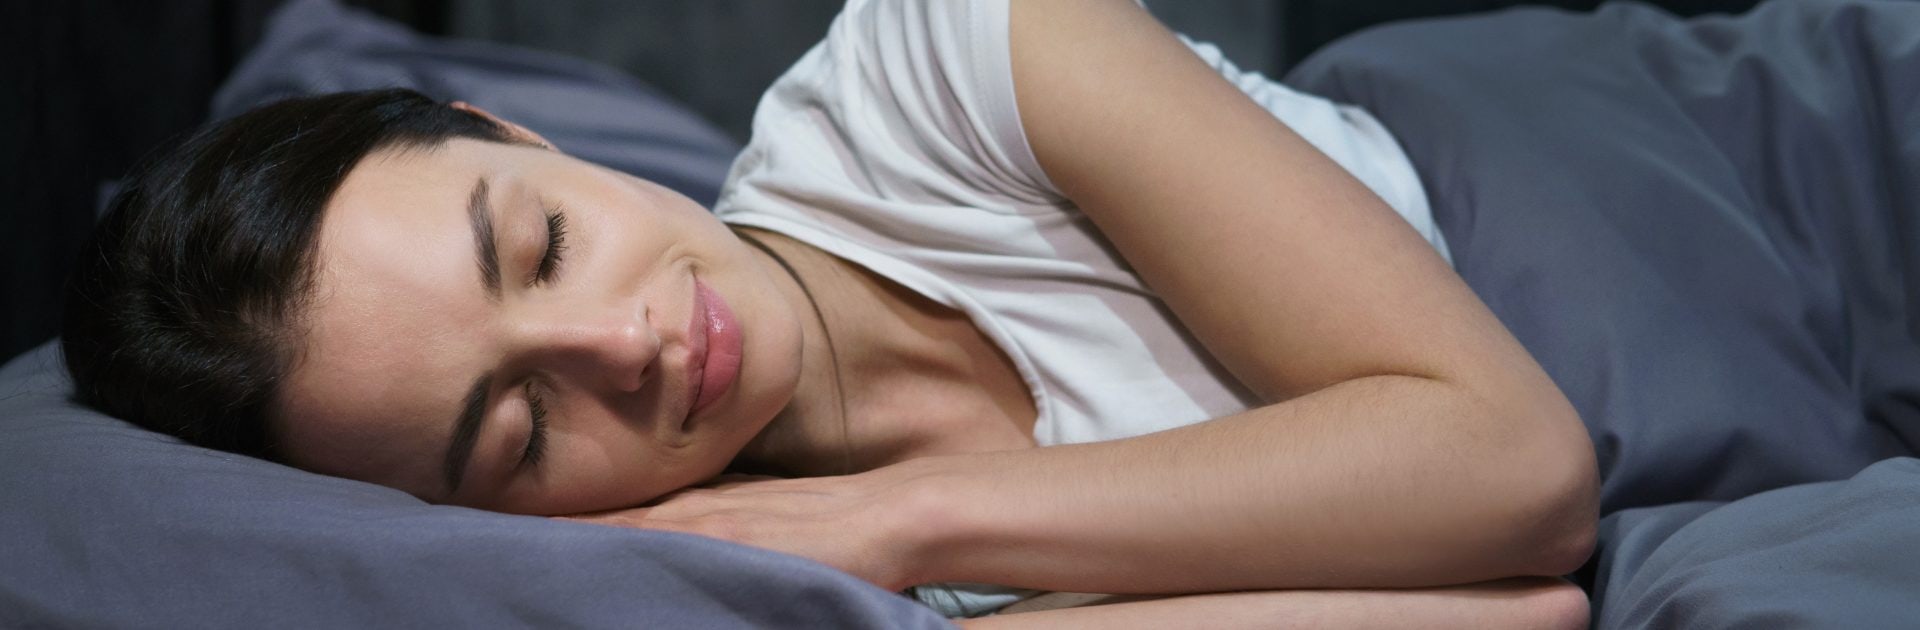 Tipps für einen gesunden Schlaf